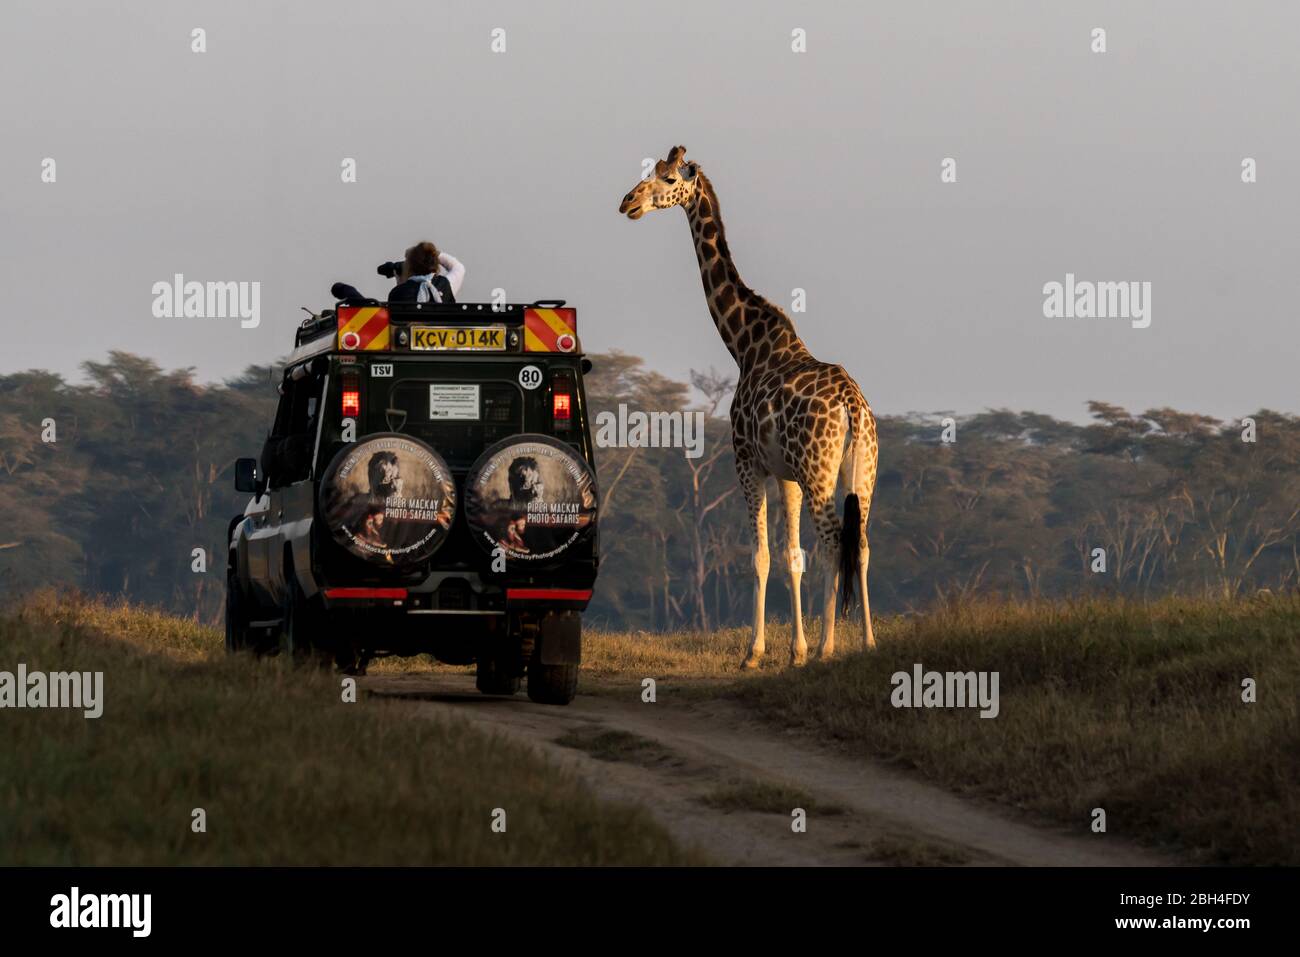 # ¡respuesta! Una jirafa se acerca al jeep del safari mientras el fotógrafo, inconsciente, dispara en la dirección opuesta Foto de stock